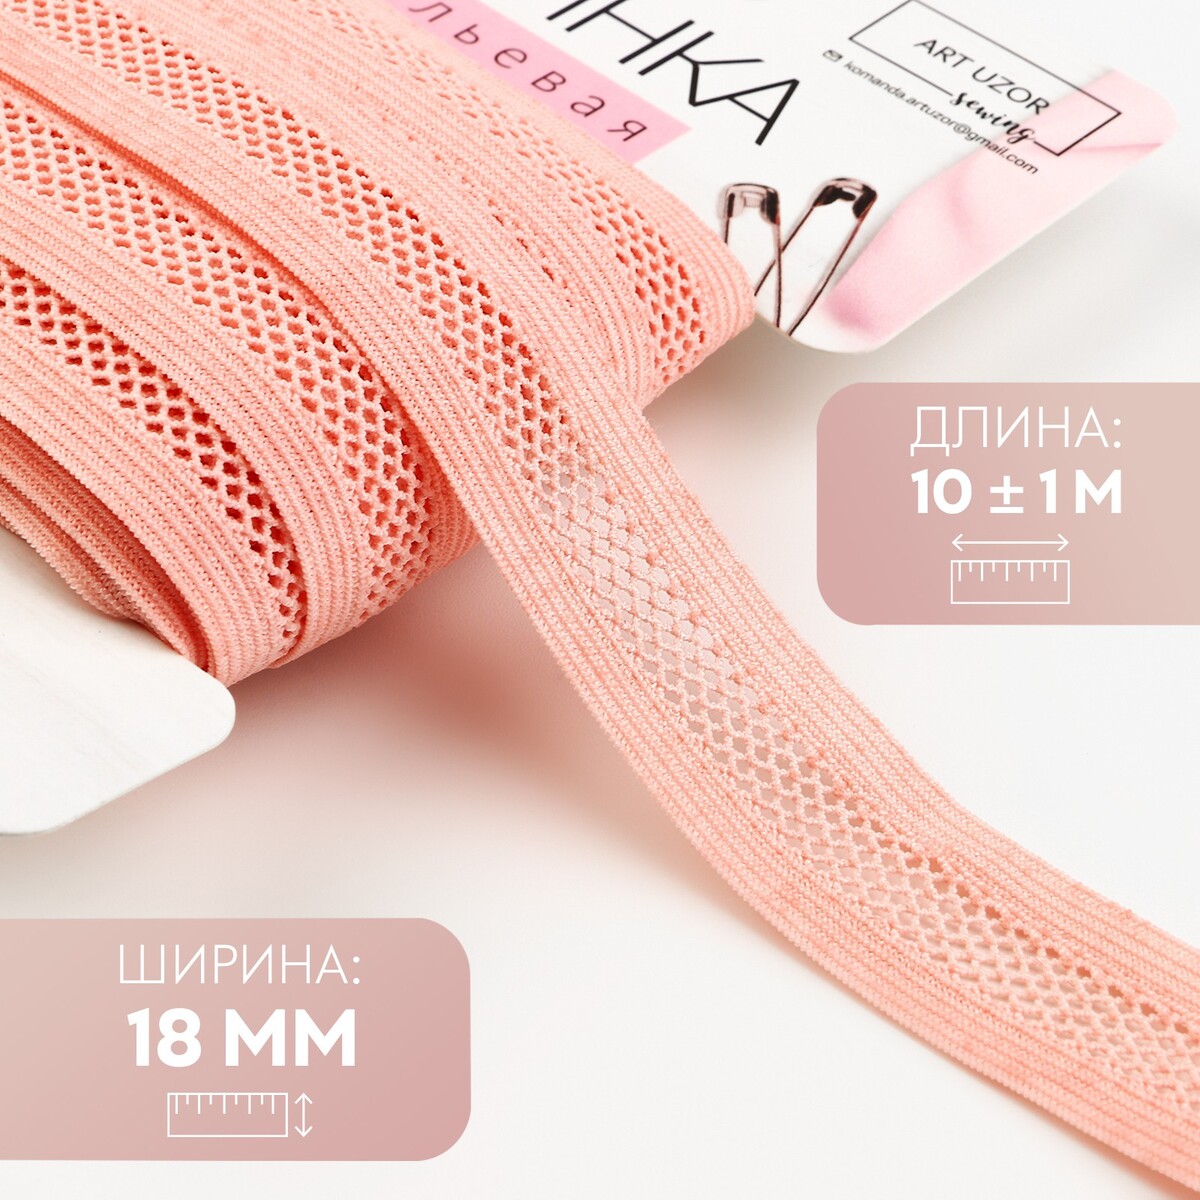 Резинка декоративная, 18 мм, 10 ± 1 м, цвет розово-персиковый резинка декоративная с прозрачными вставками 27 мм 10 ± 1 м